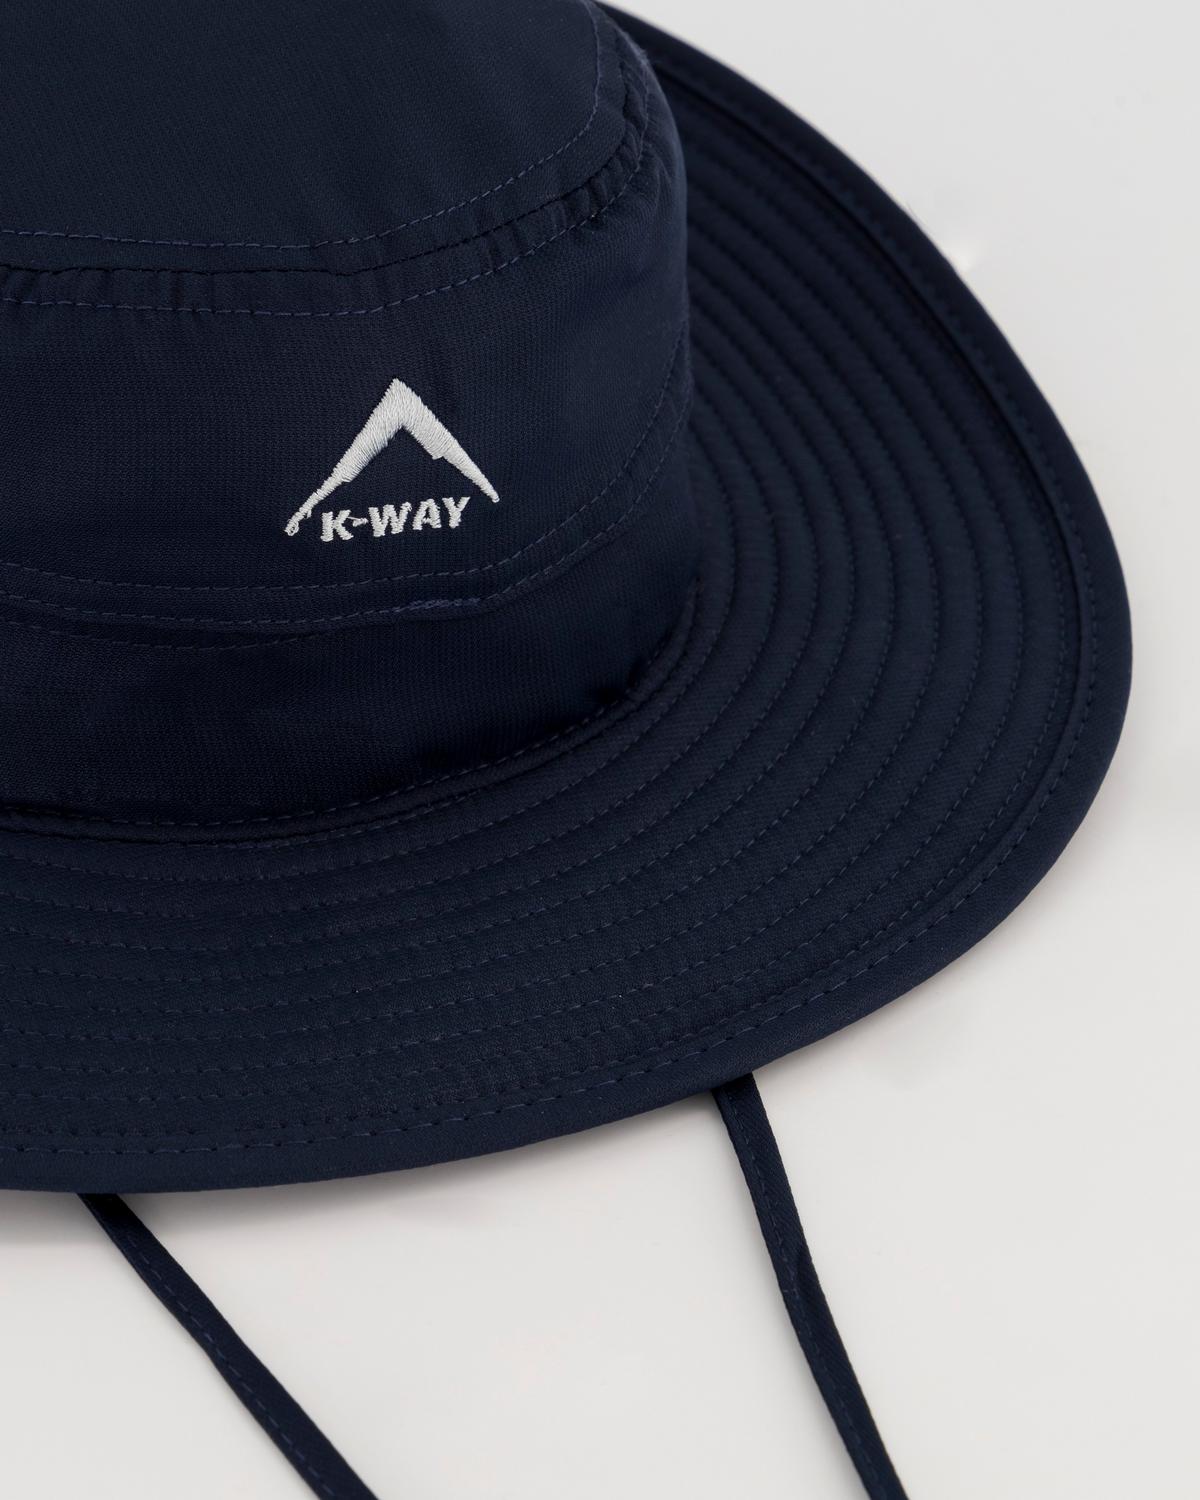 K-Way Kids Talus Floppy Hat -  Navy